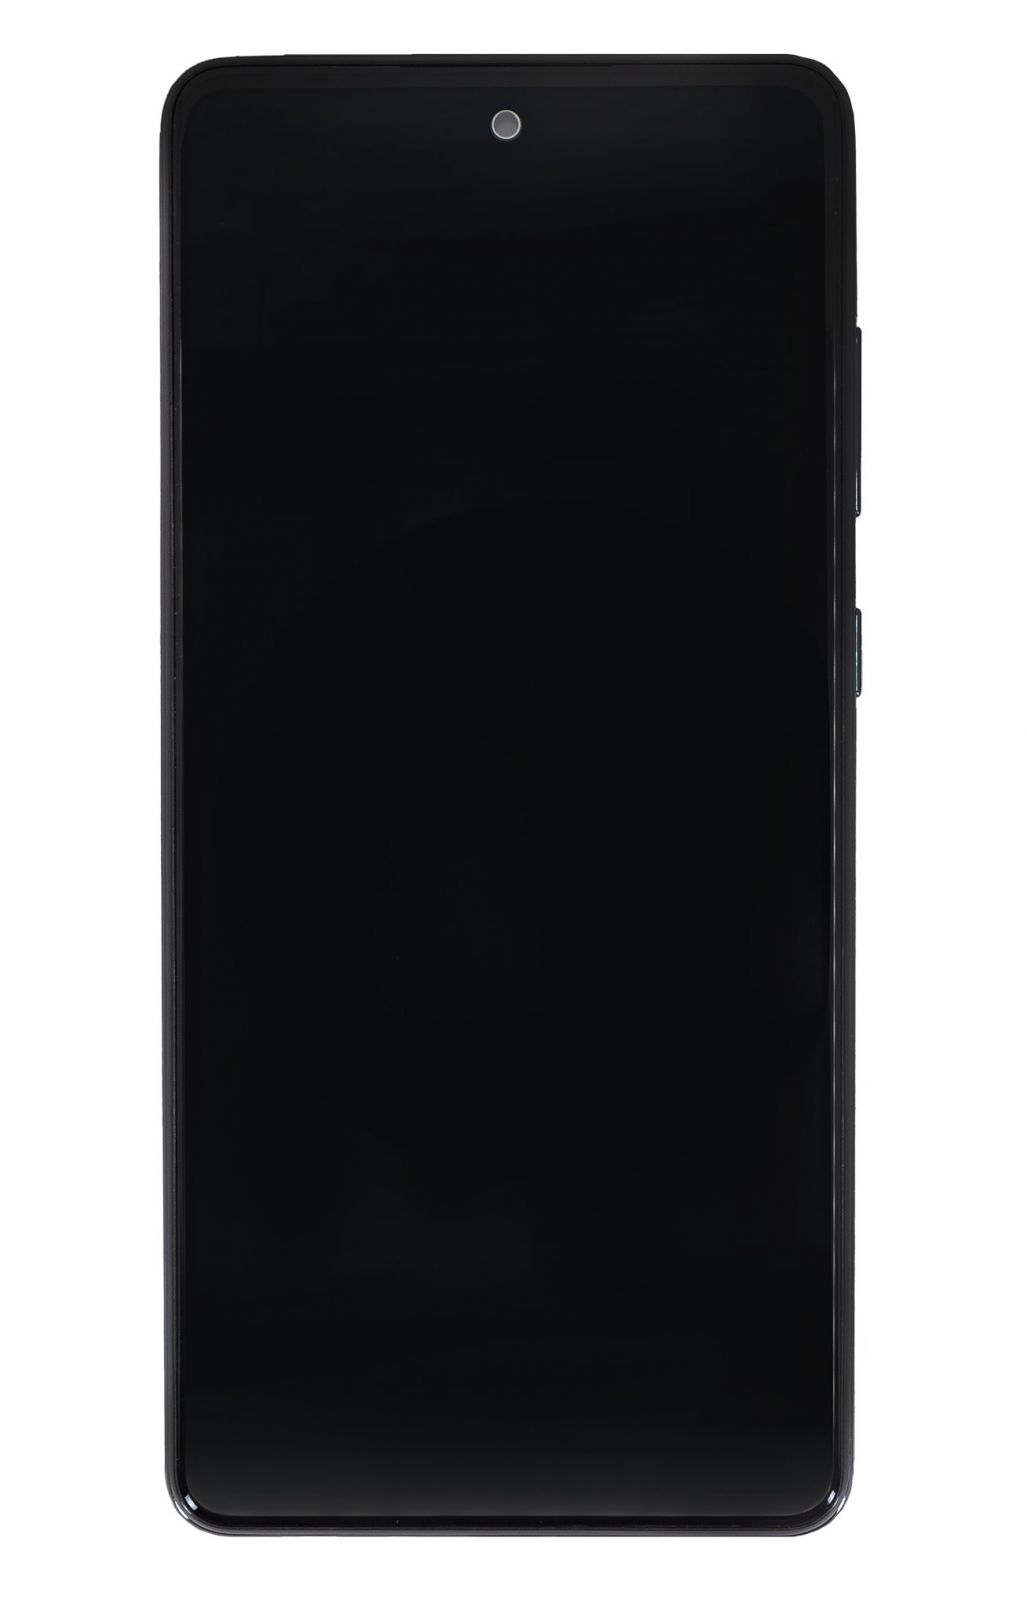 LCD Display + Dotyková Deska + Přední Kryt Samsung A725 Galaxy A72 Black (Service Pack) - Originál